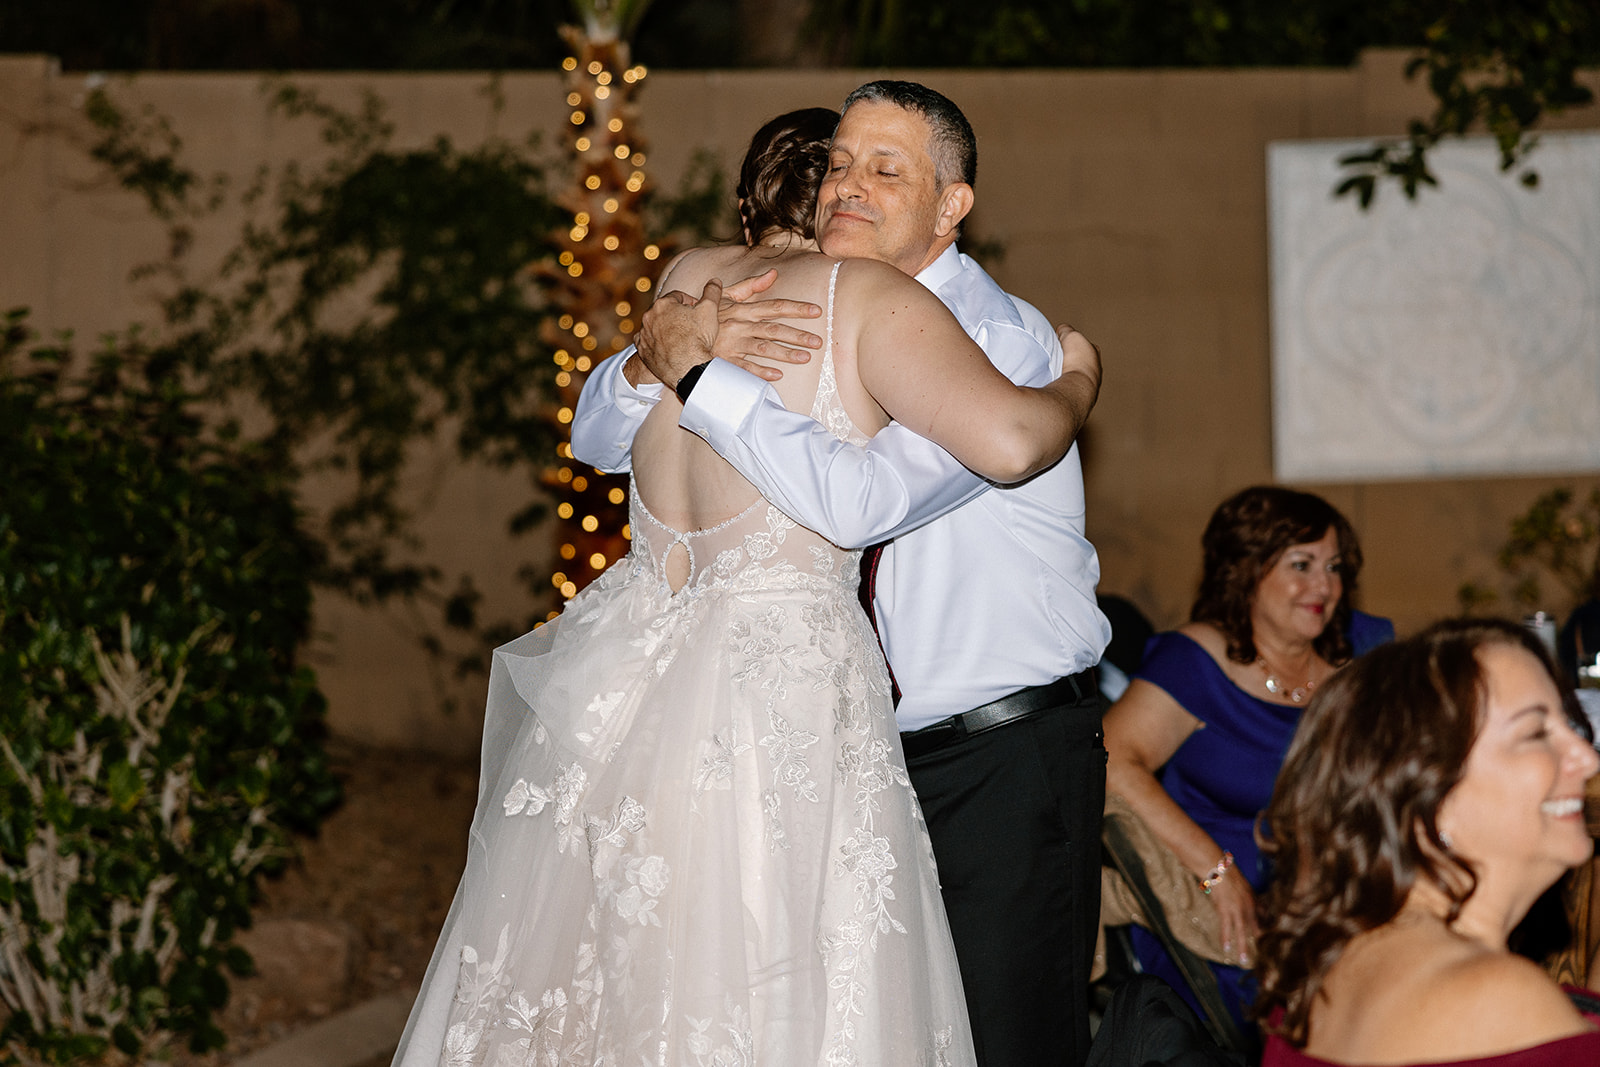 bride hugging guest at wedding reception